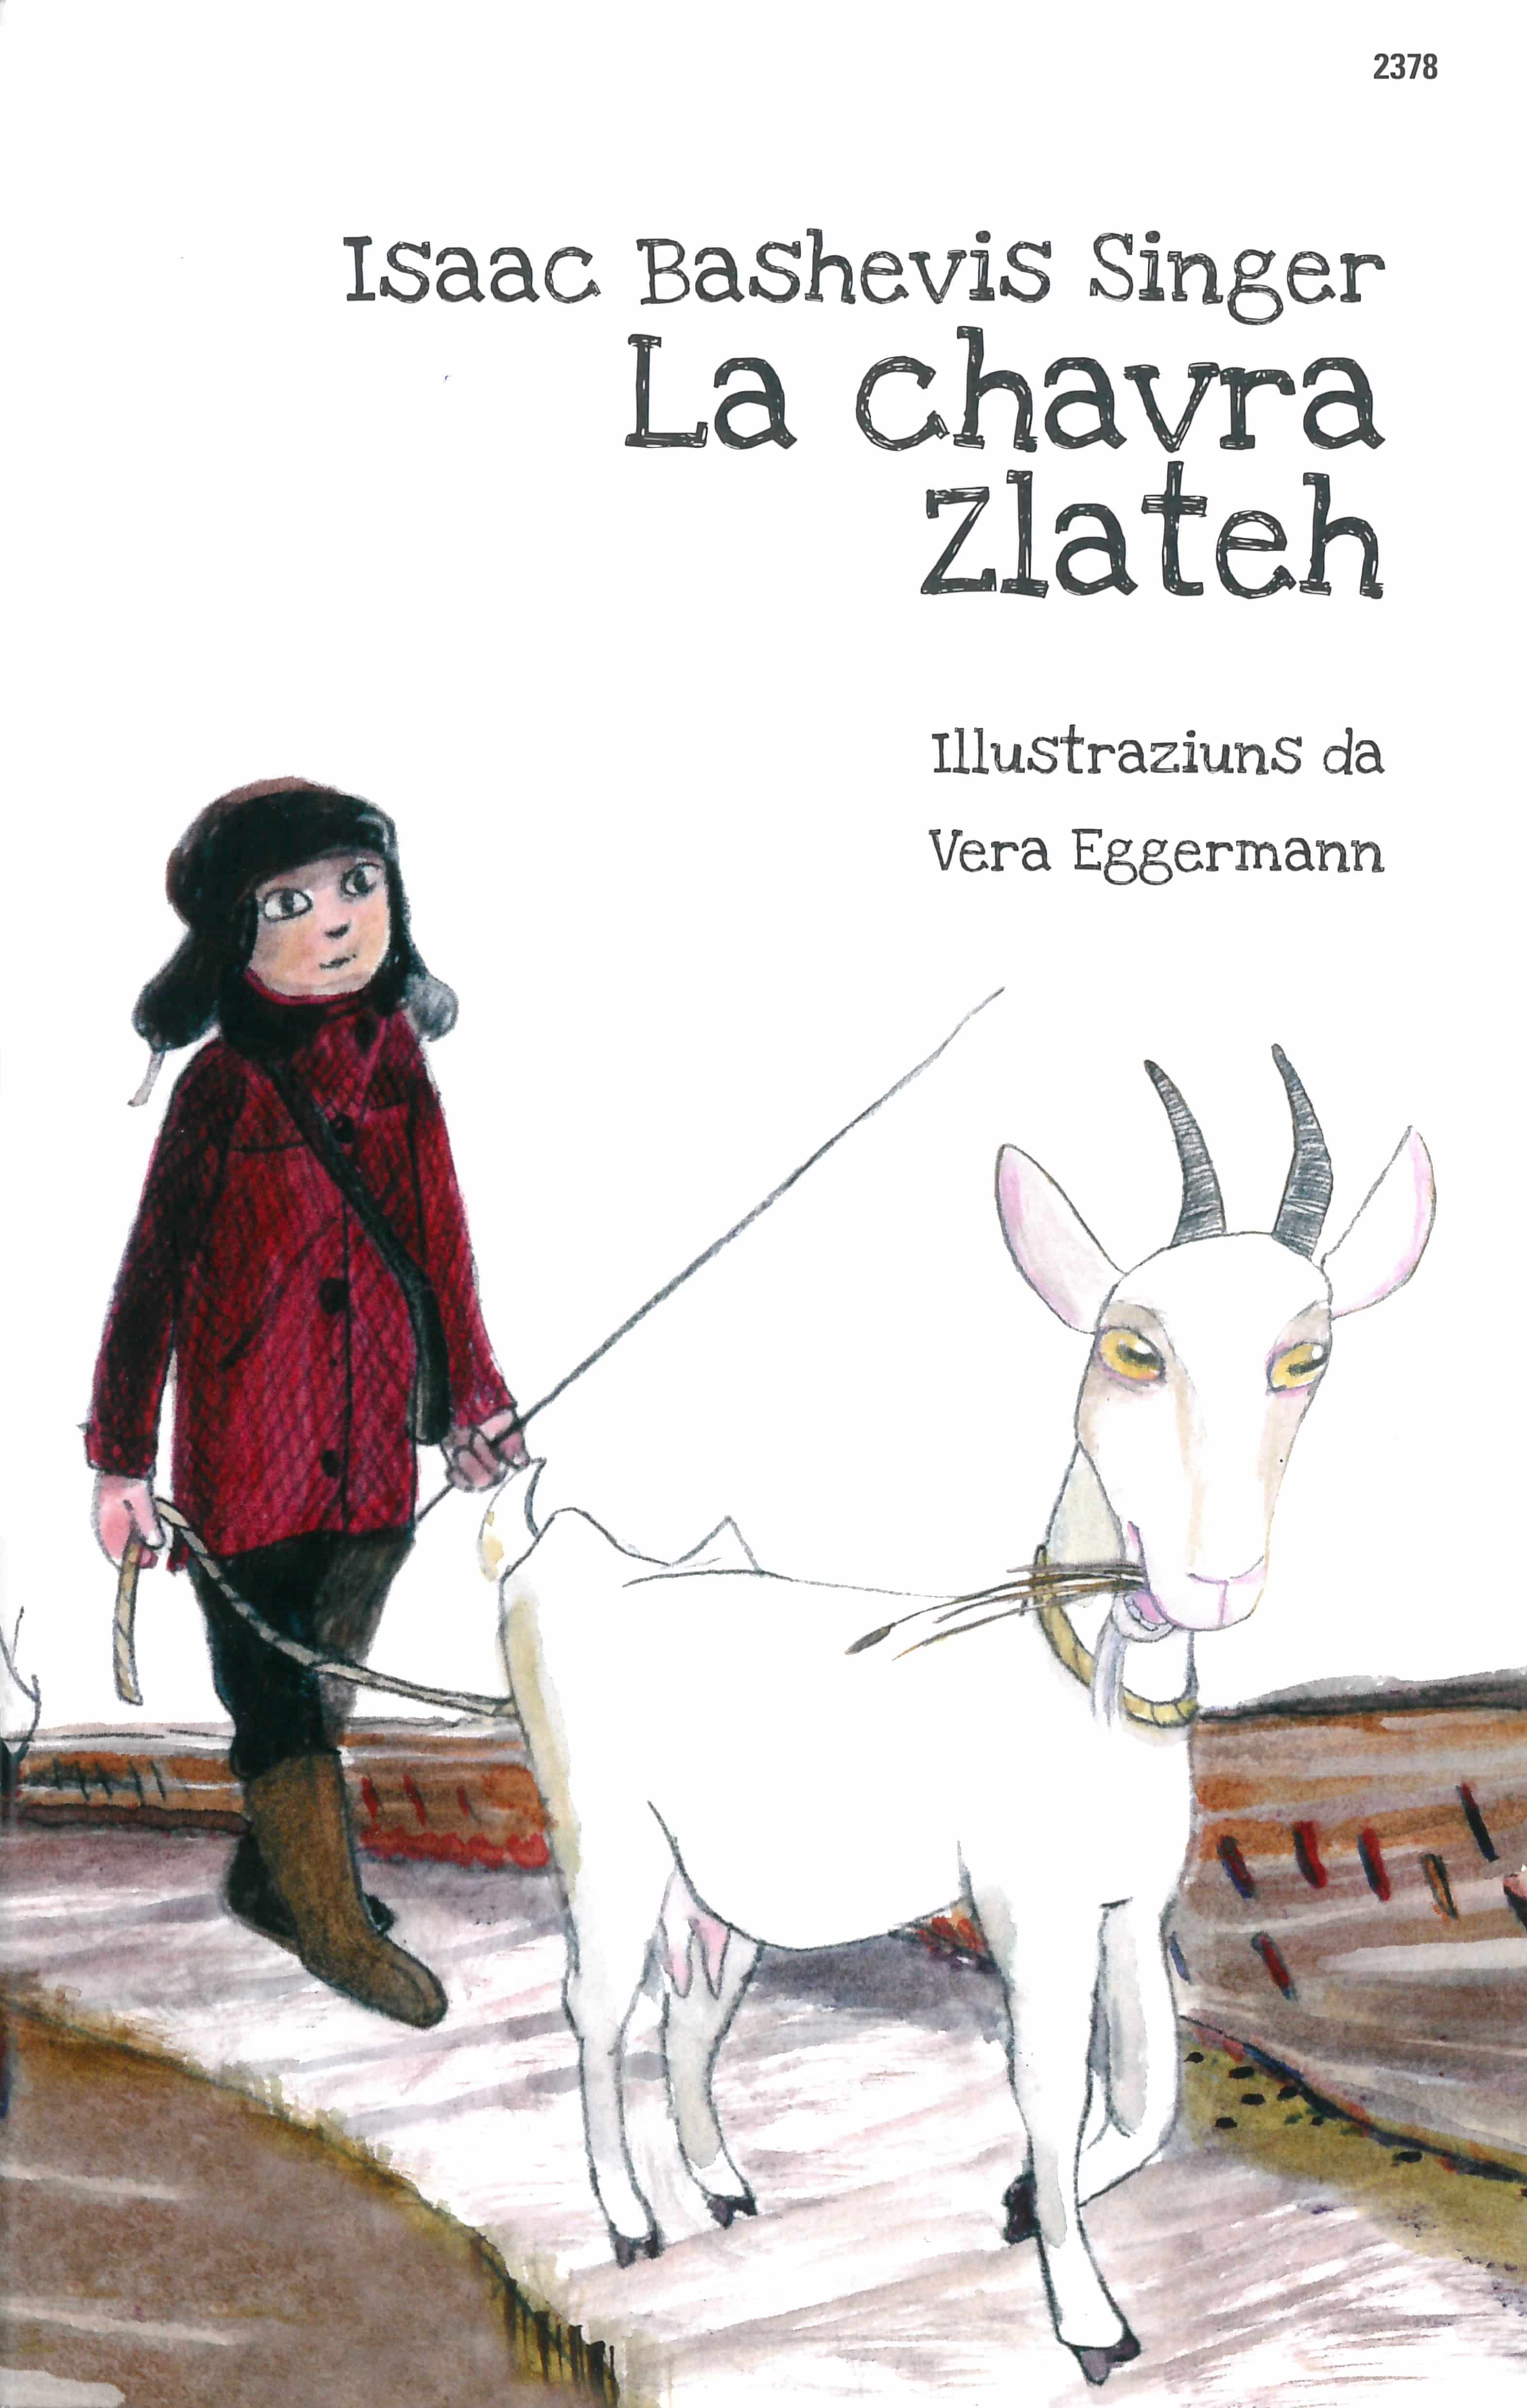 La chavra Zlateh, ein Kinderbuch von Isaac Bashevis Singer, Illustration von Vera Eggermann, SJW Verlag, Bilderbuchklassiker